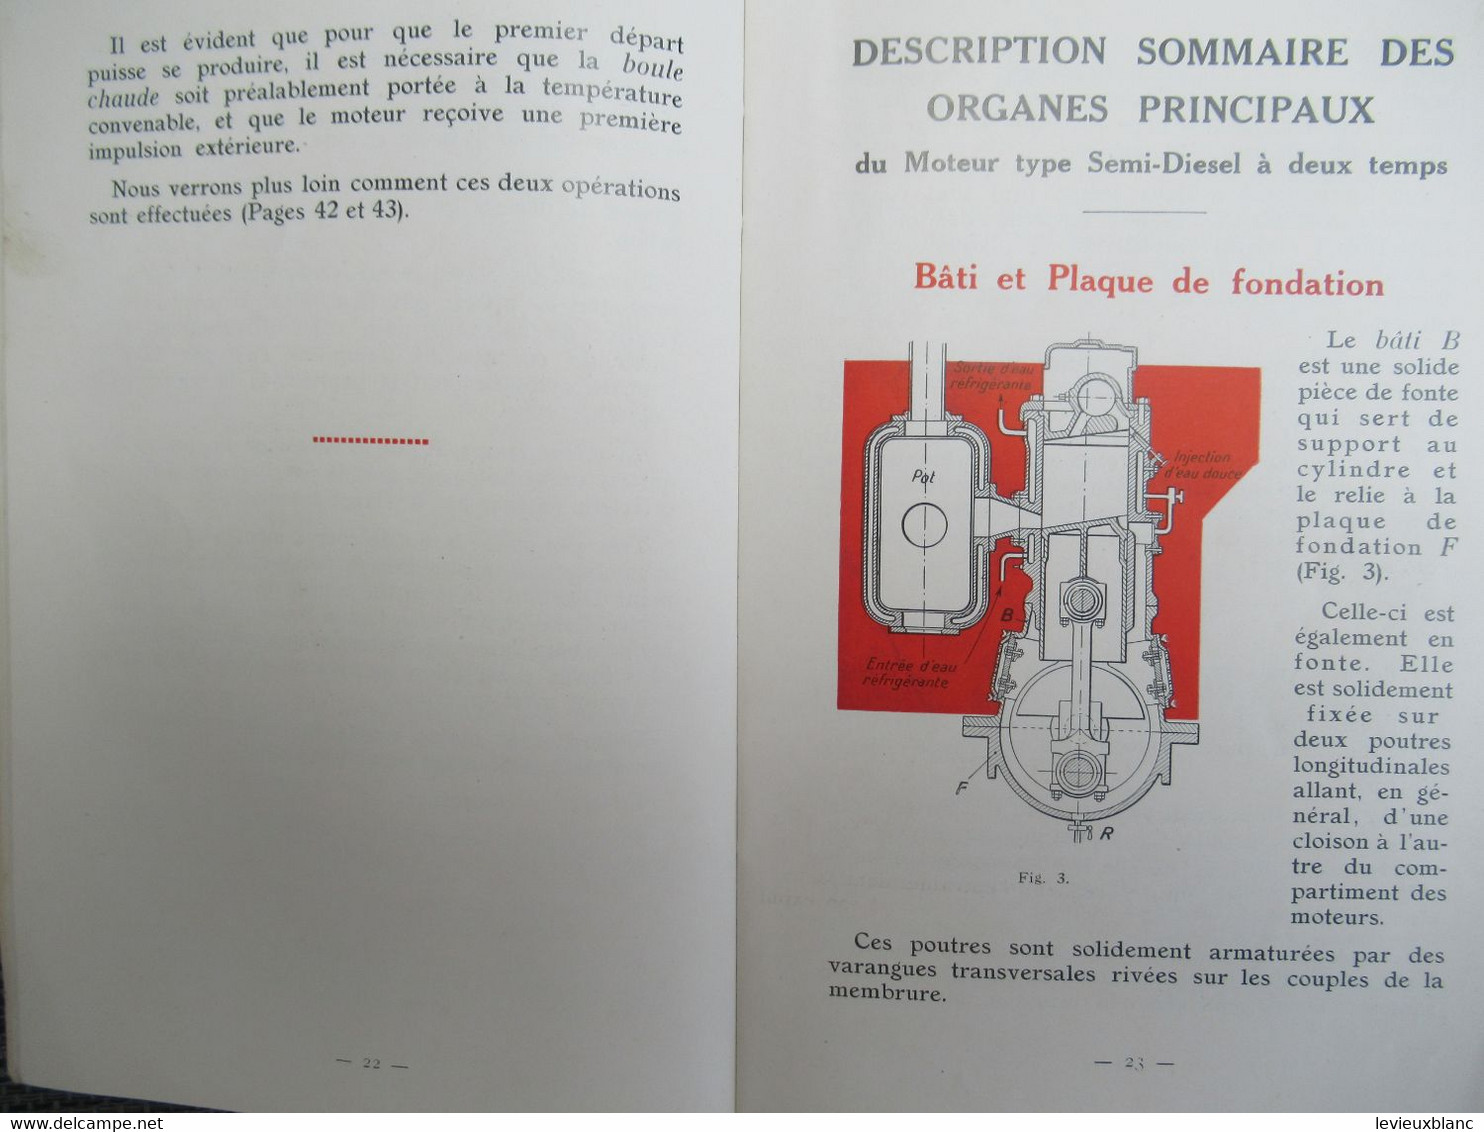 Guide de Graissage  MOTEURS SEMI-DIESEL MARINS/Vacuum Oil Company/ Paris/GARGOYLE/Vers 1925-1930       MAR108